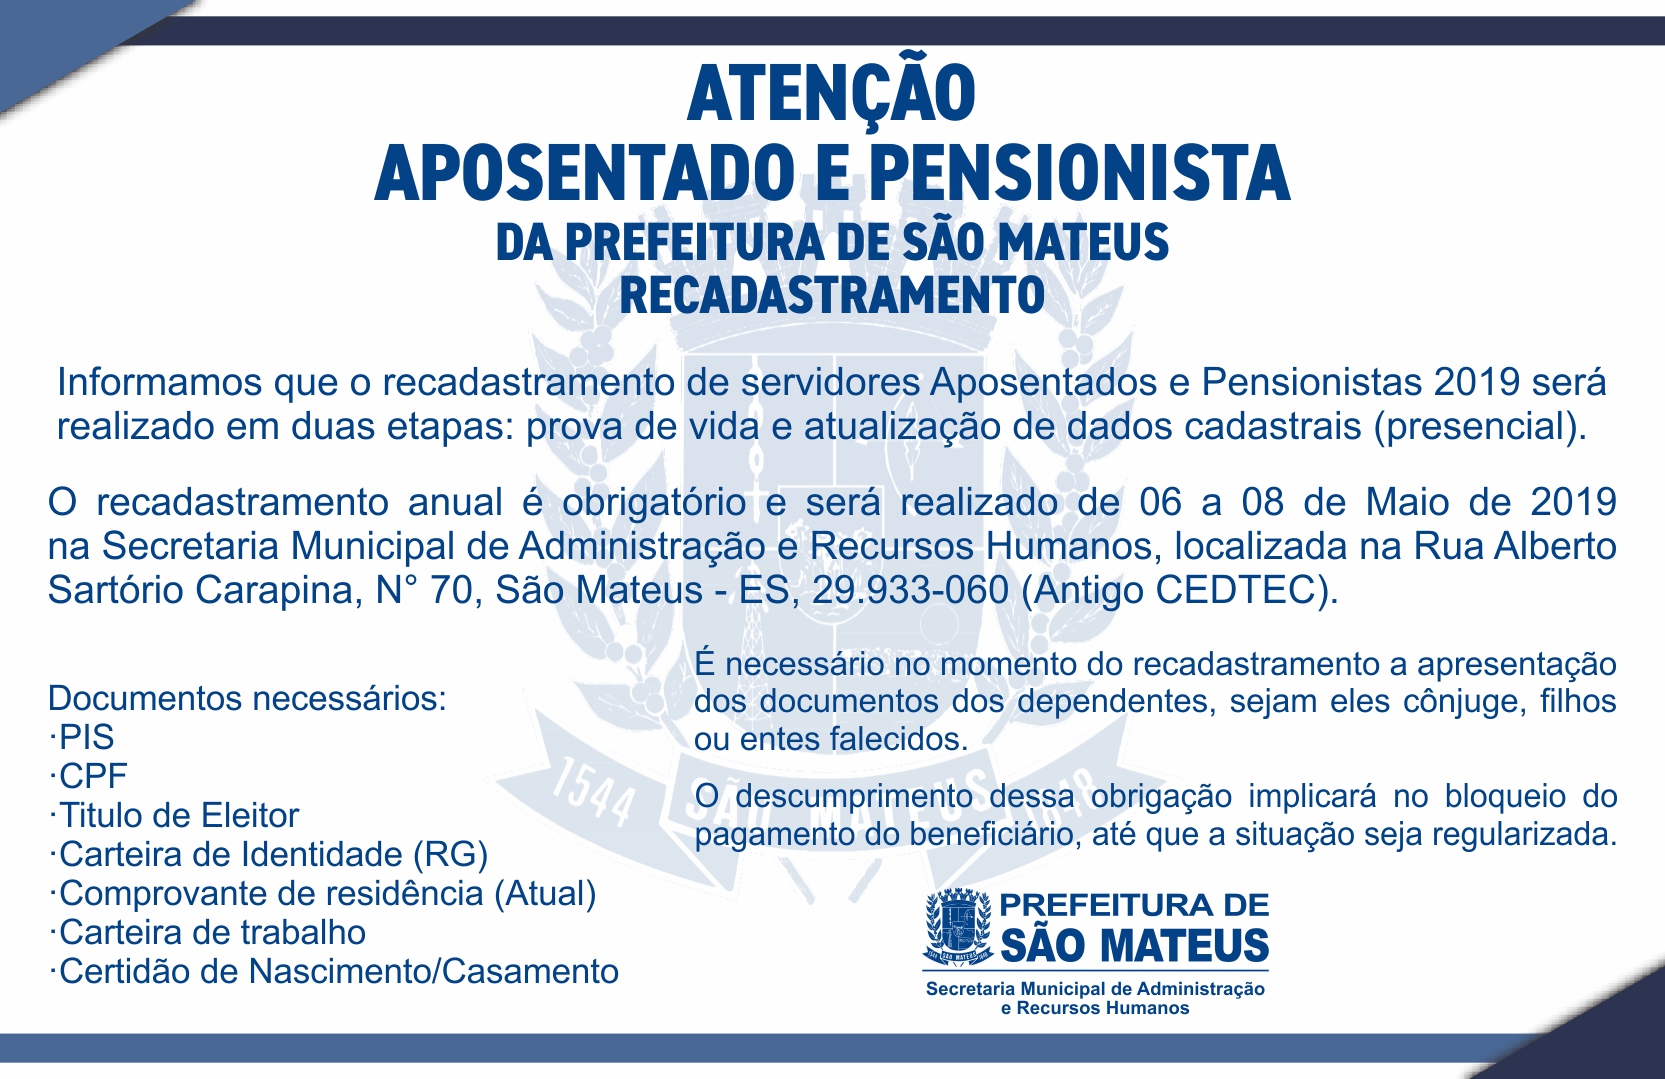 COMUNICADO - RECADASTRAMENTO DE SERVIDORES APOSENTADOS E PENSIONISTAS 2019 DA PREFEITURA DE SÃO MATEUS